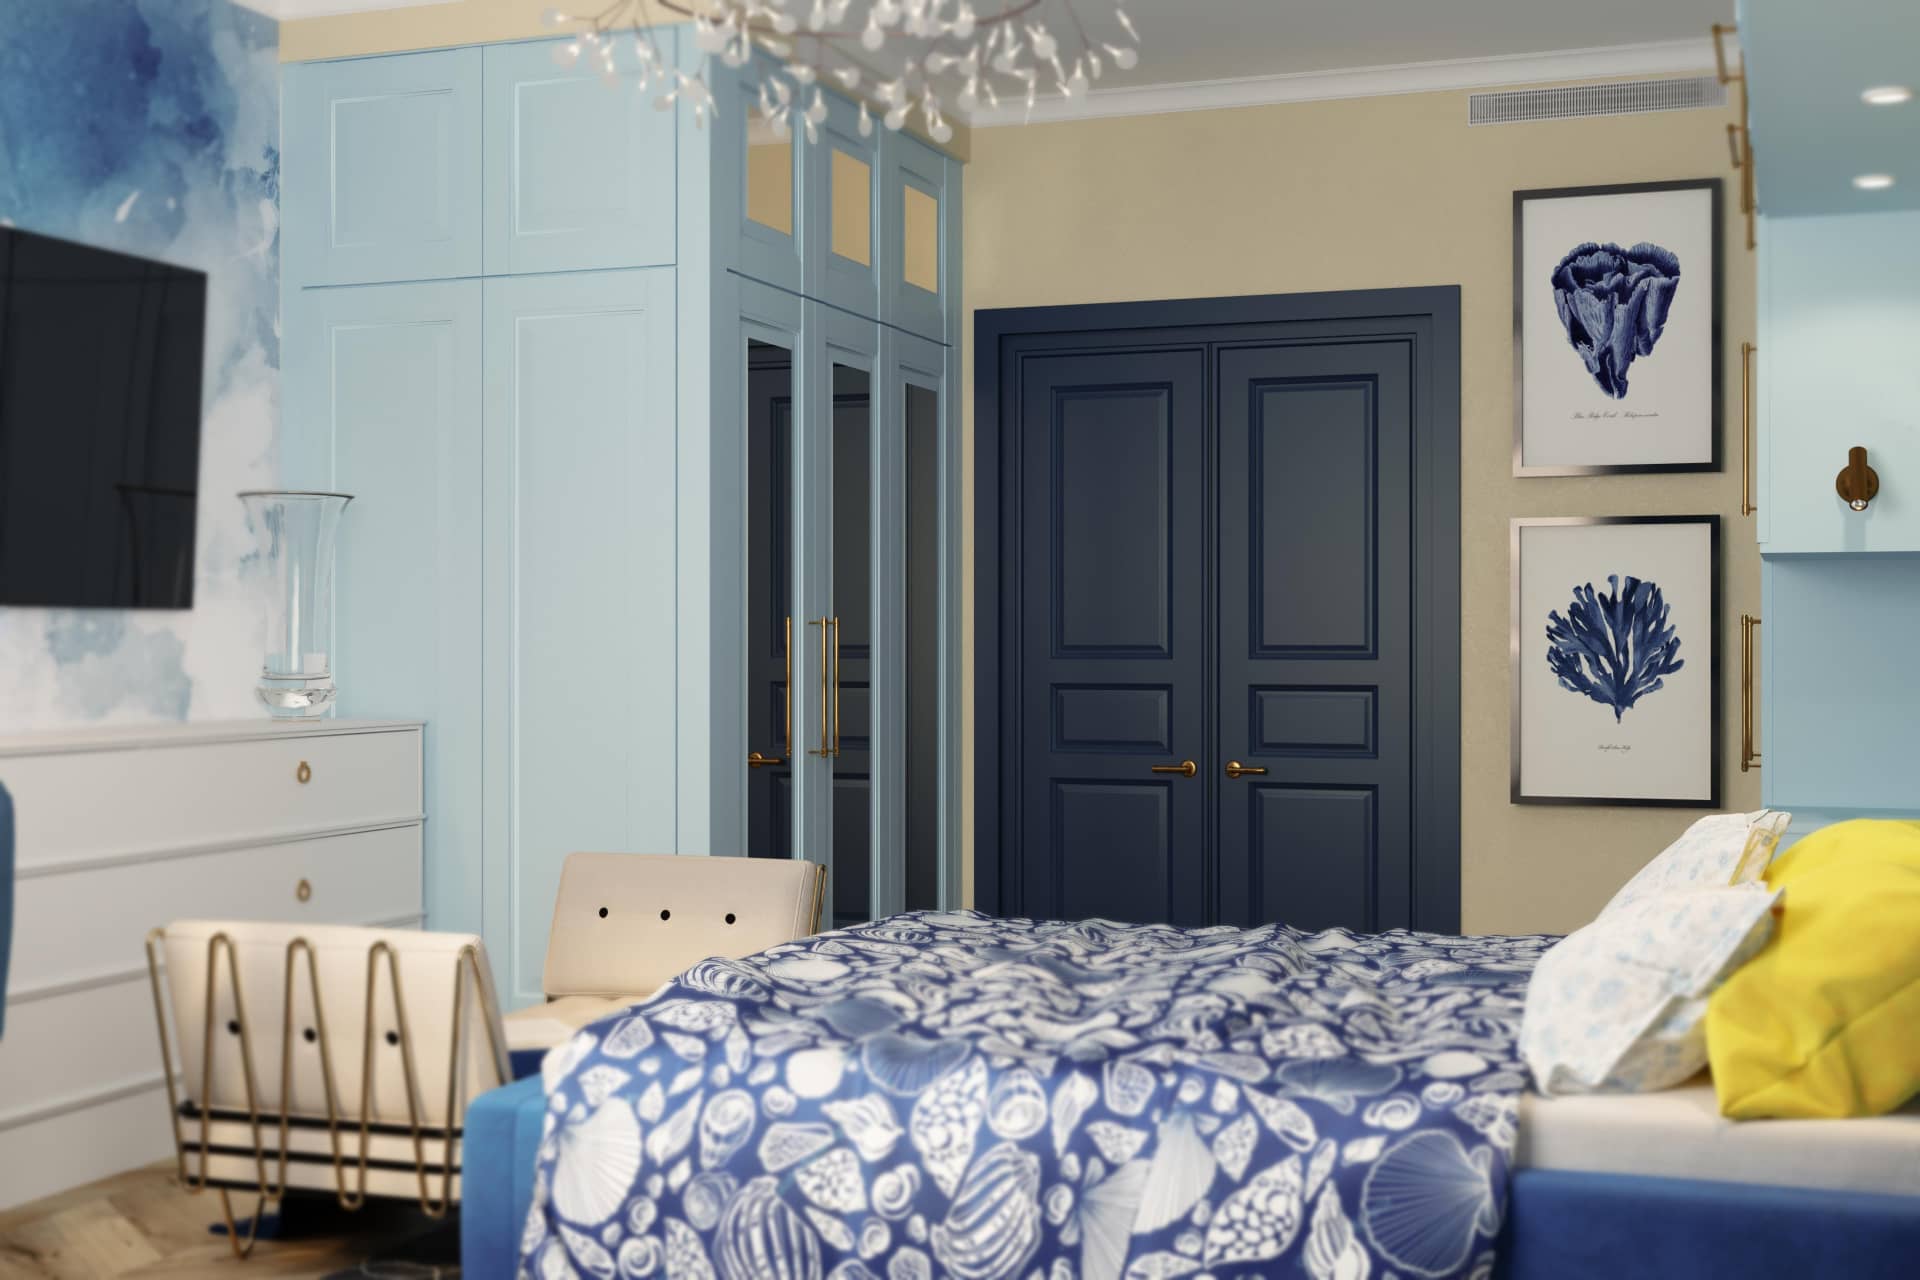 Двуспальная кровать из синего велюра и одеяла с рисунками ракушек